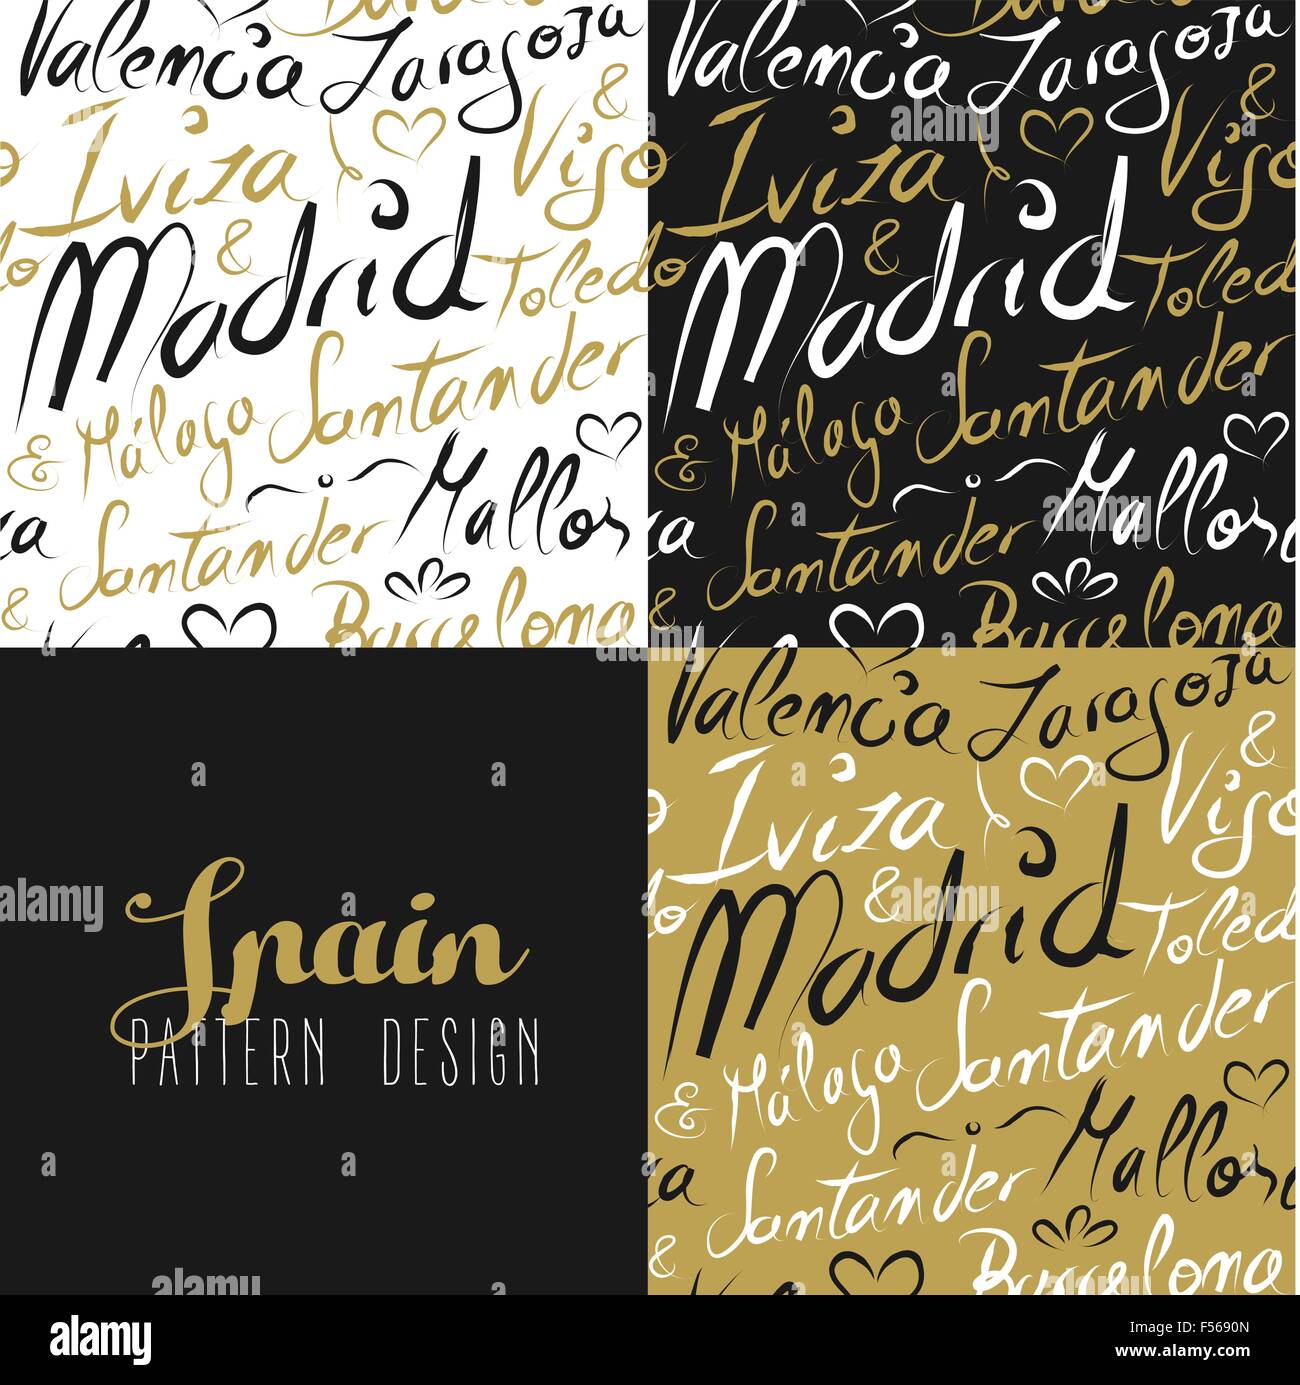 Reisen Sie Spanien Europa berühmte Städte mit handgefertigten Kalligraphie. Stadt Madrid, Barcelona, Mallorca, Toledo, Santander. Stock Vektor